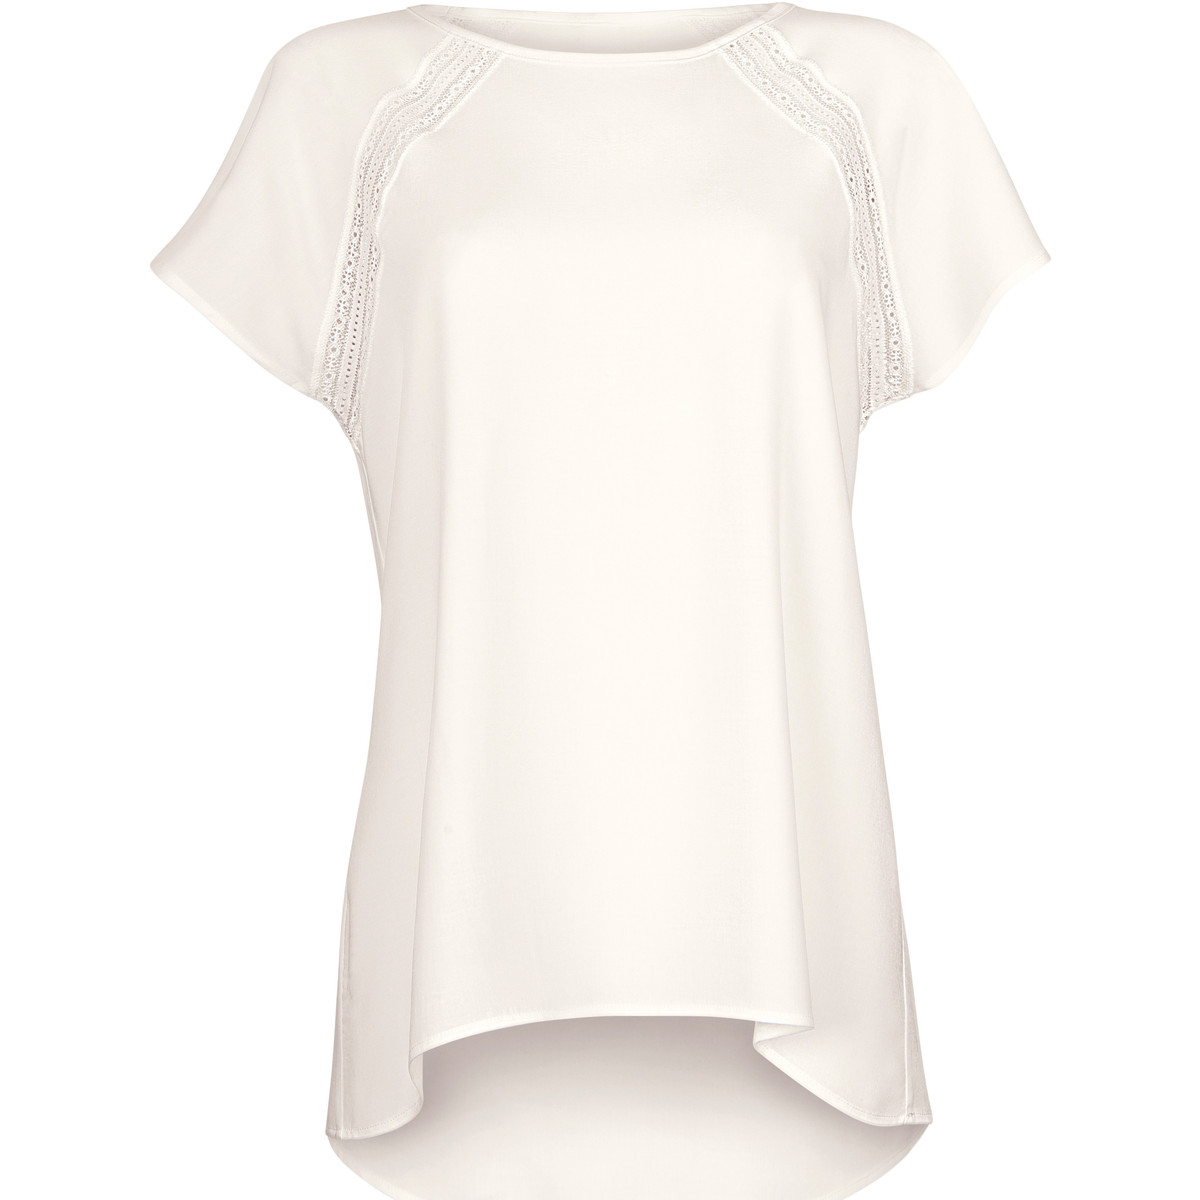 Kleidung Damen Tops / Blusen Lisca Kurzarm-T-Shirt Timeless Cheek von Weiss